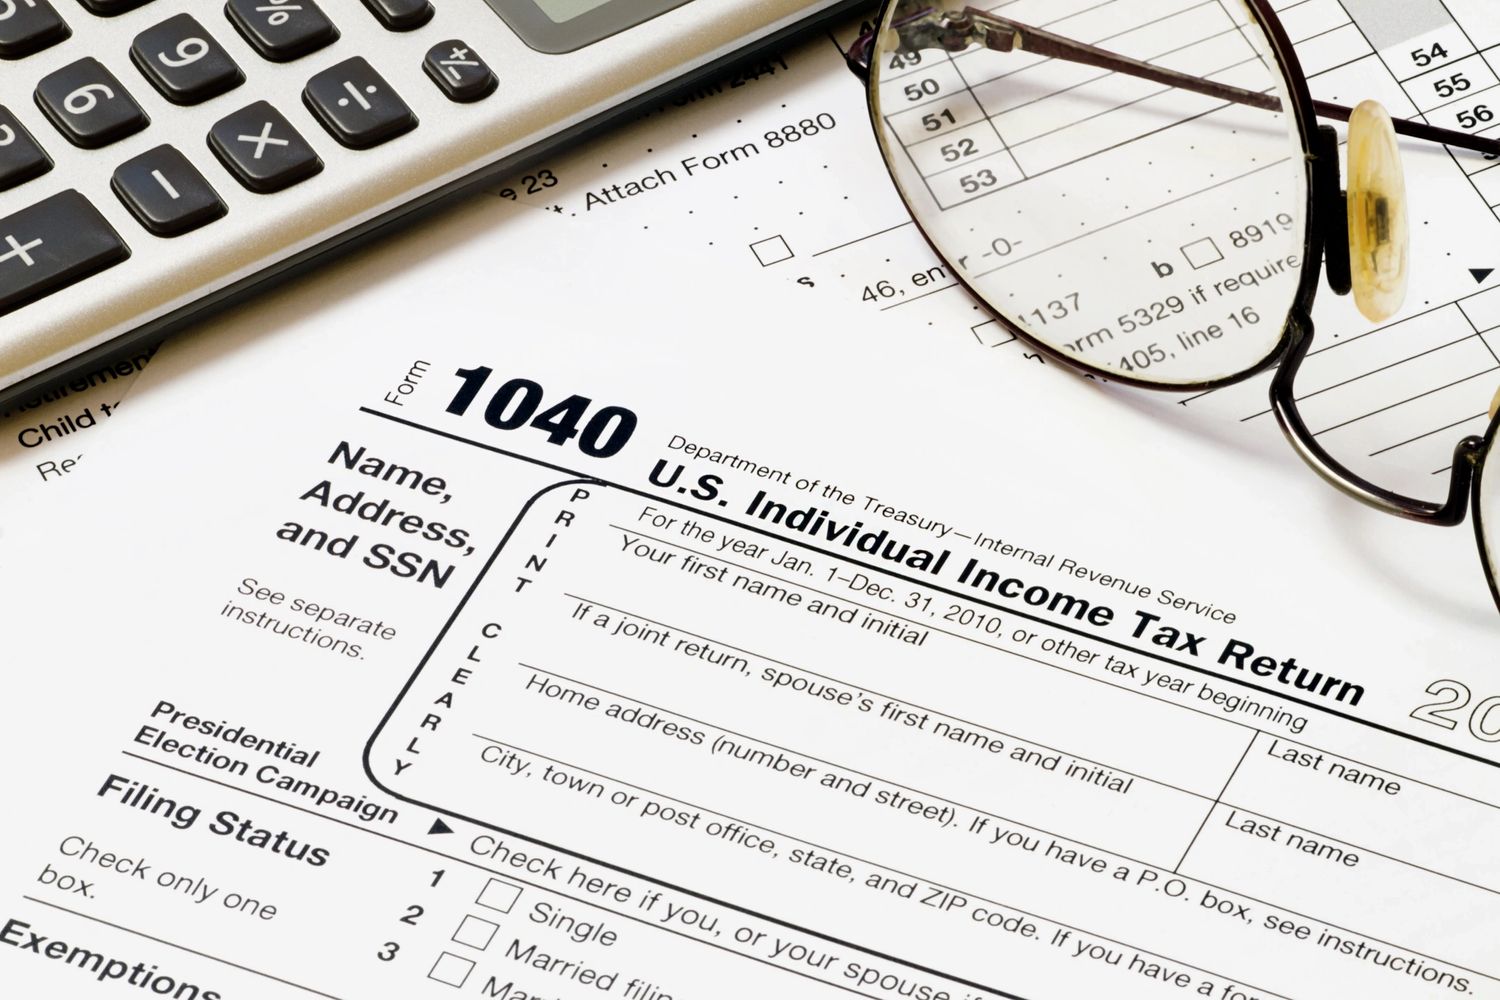 Income tax return preparation in Edison NJ